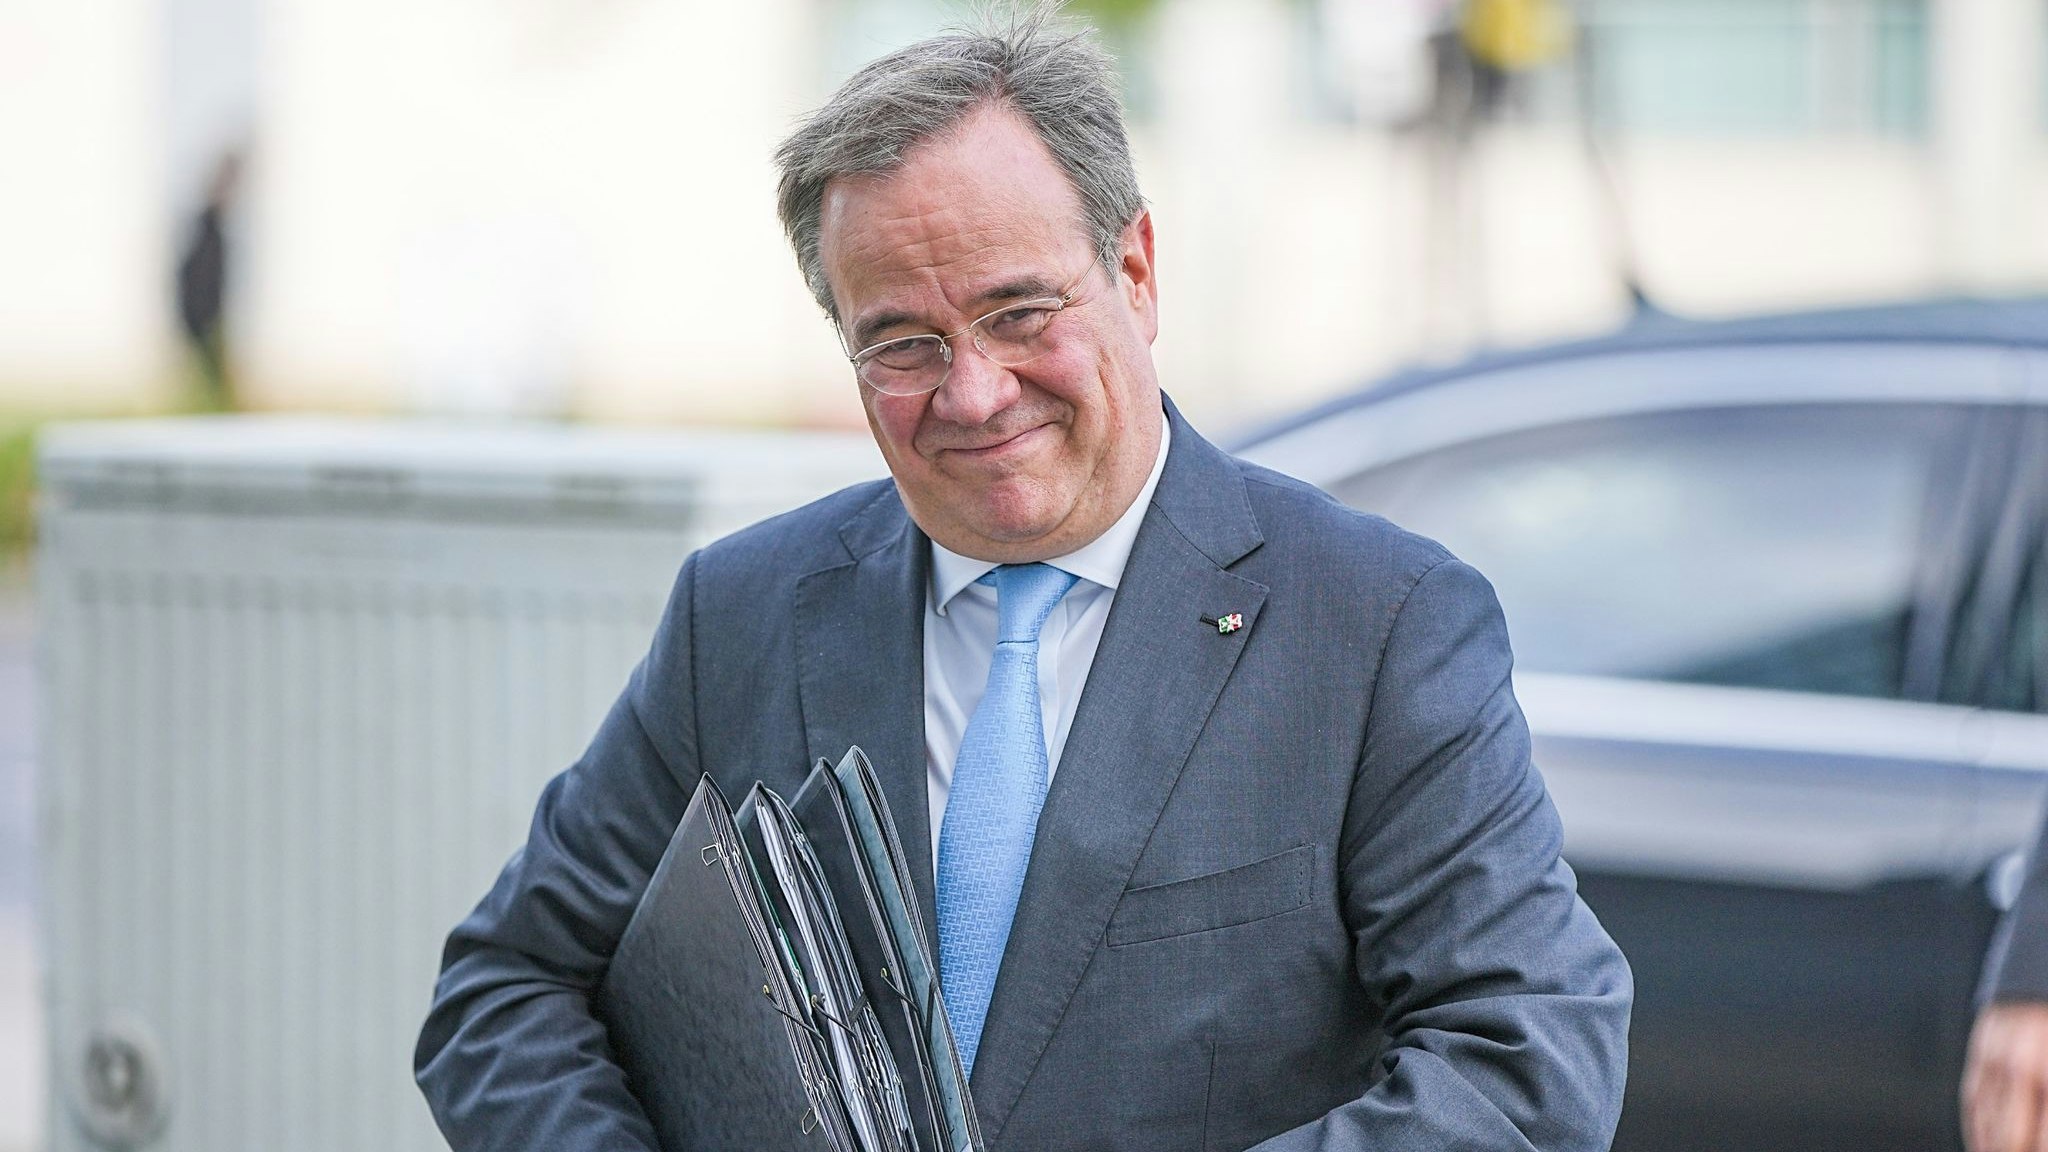 Schlechte Nachrichten: Unter der Führung des CDU-Bundesvorsitzenden Armin Laschet verliert die Partei weiter an Boden. Foto: dpa/Kappeler